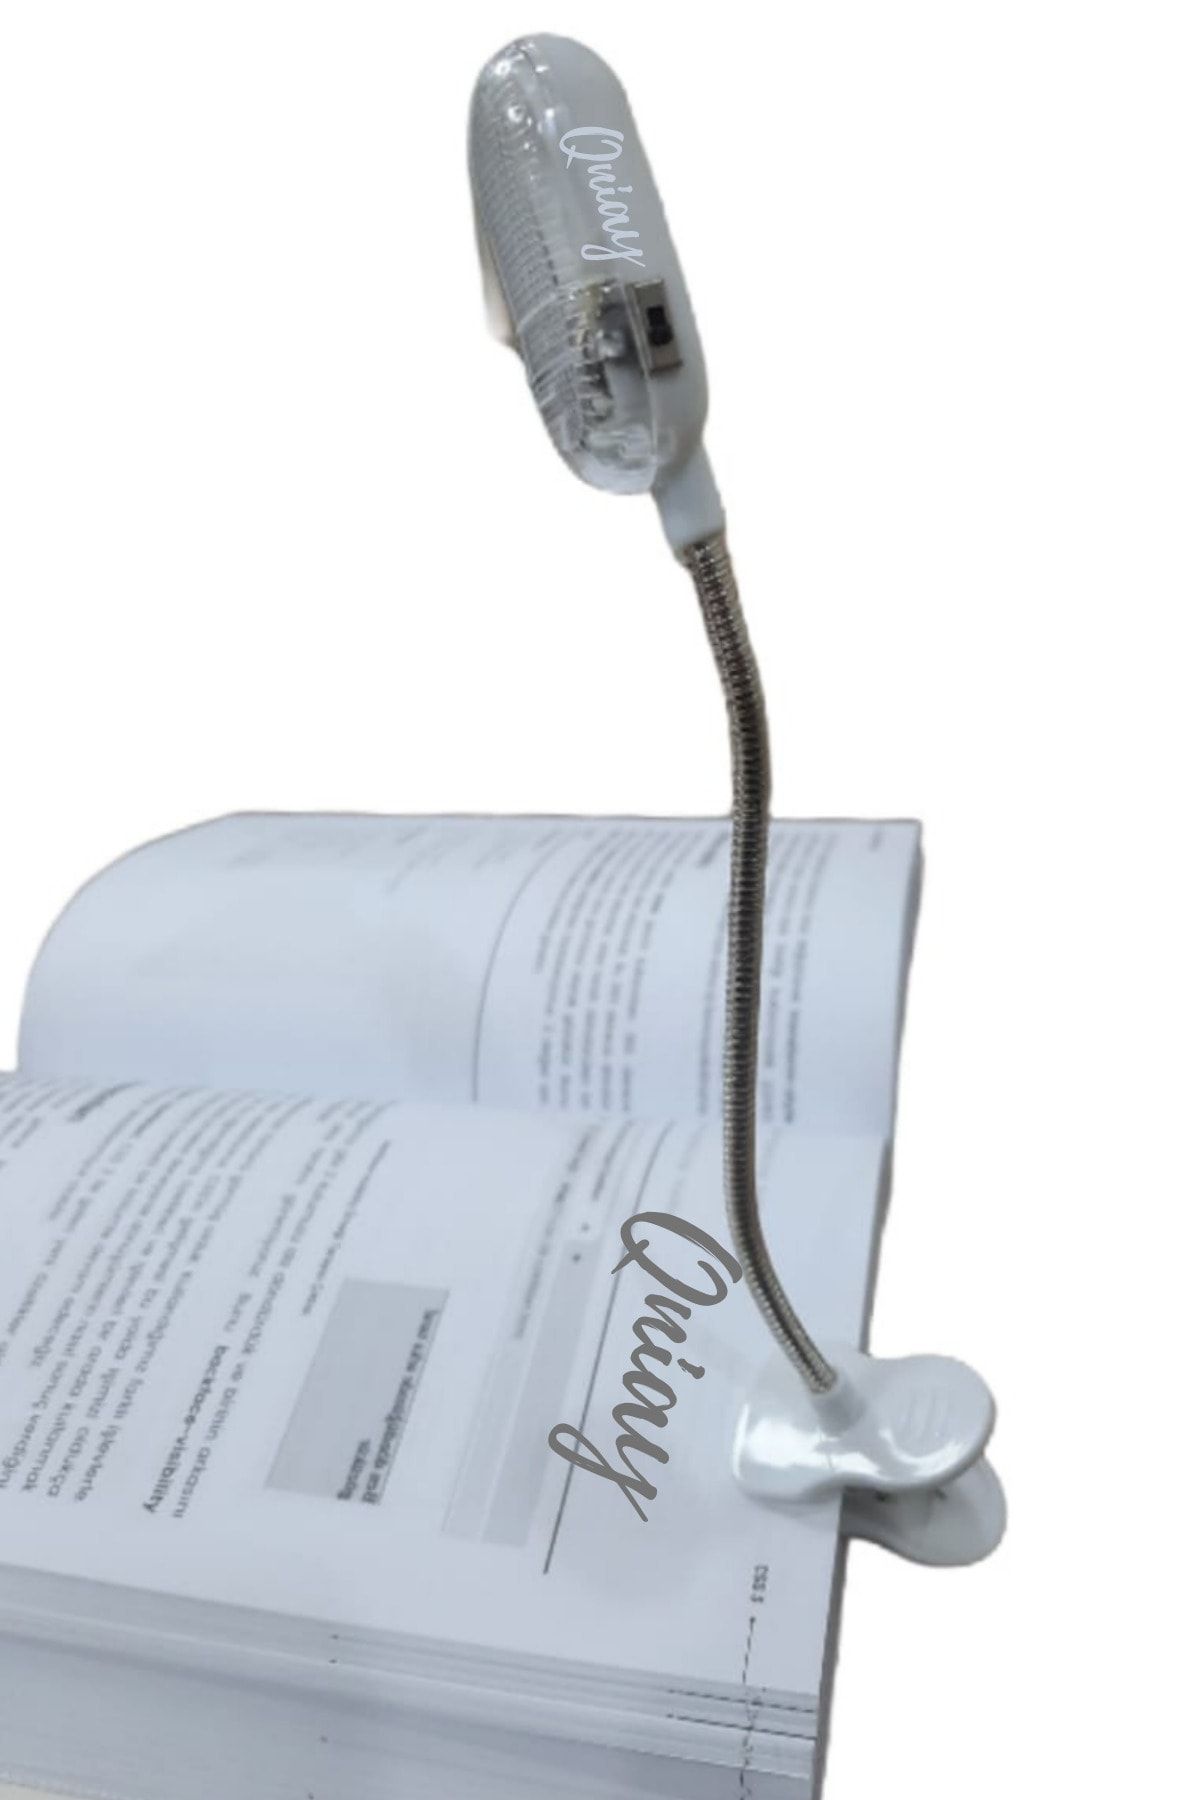 QNİAY Kıskaçlı Led Masa Lambası Yeni Kitap Okuma Işığı Spirali Kıskaçlı Led Lamba ( Pil Hediyeli)